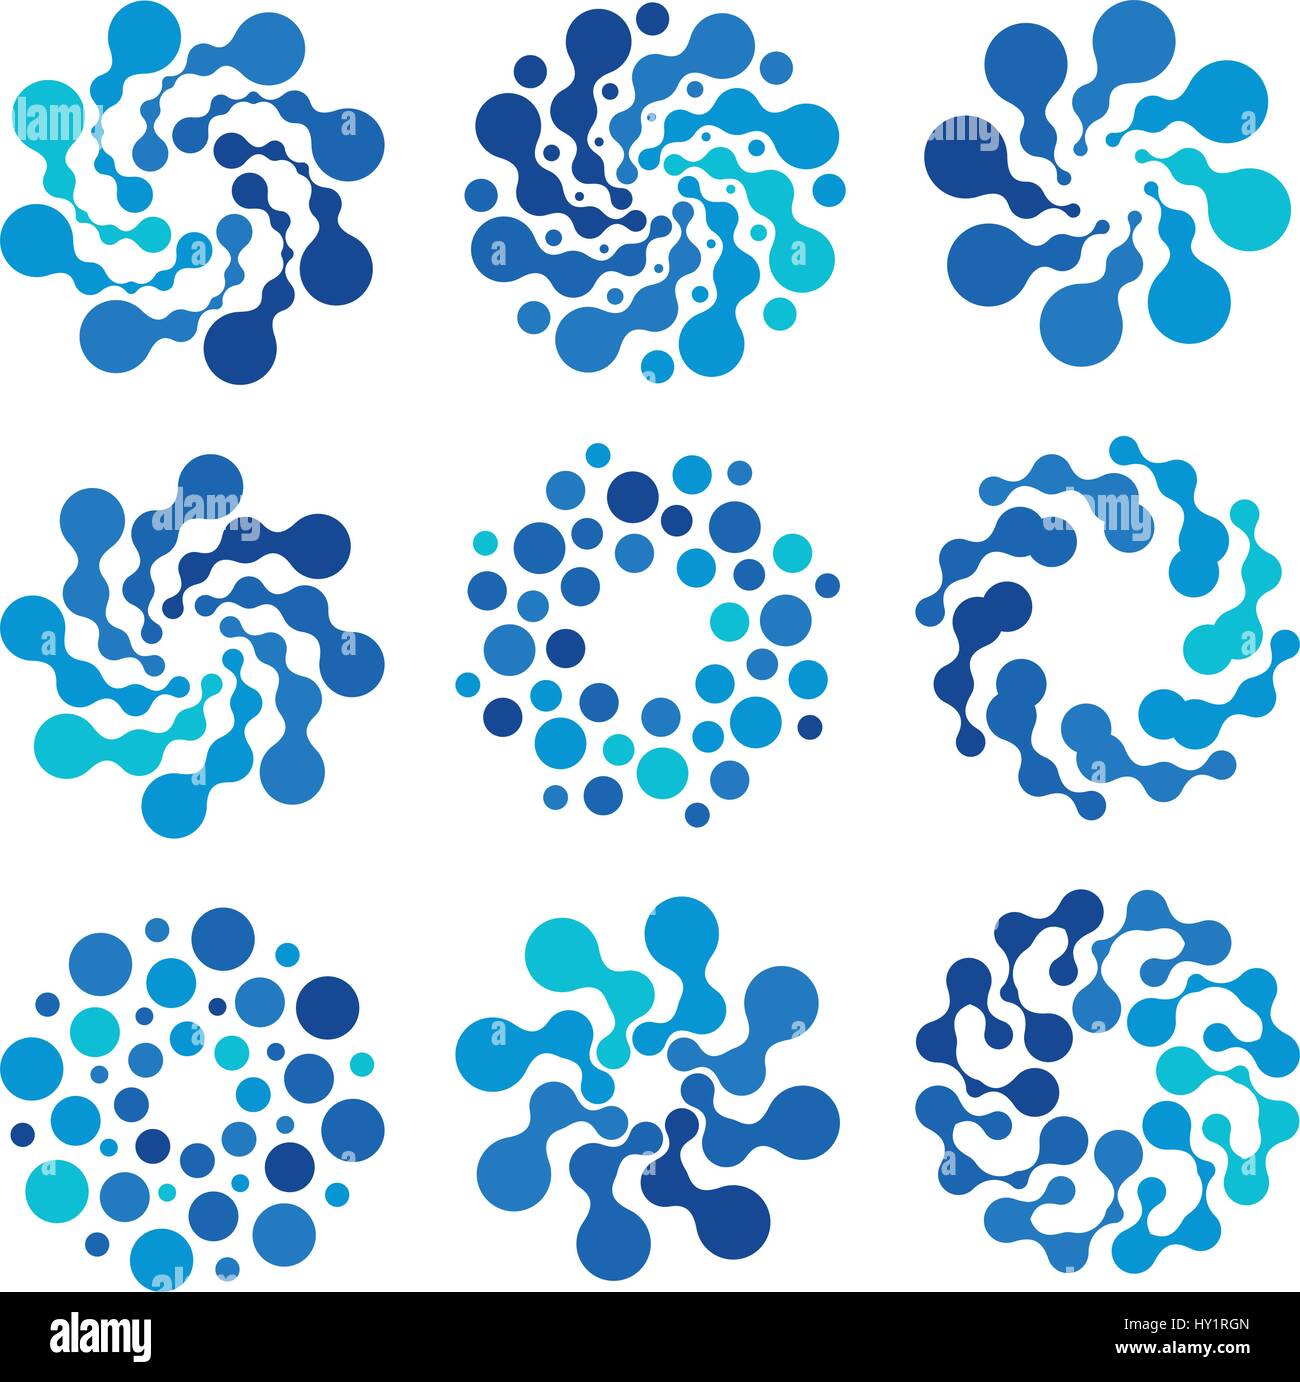 Abstract isolata forma tonda colore blu set logo, logotipo punteggiata raccolta, elemento acqua illustrazione vettoriale su sfondo bianco Illustrazione Vettoriale